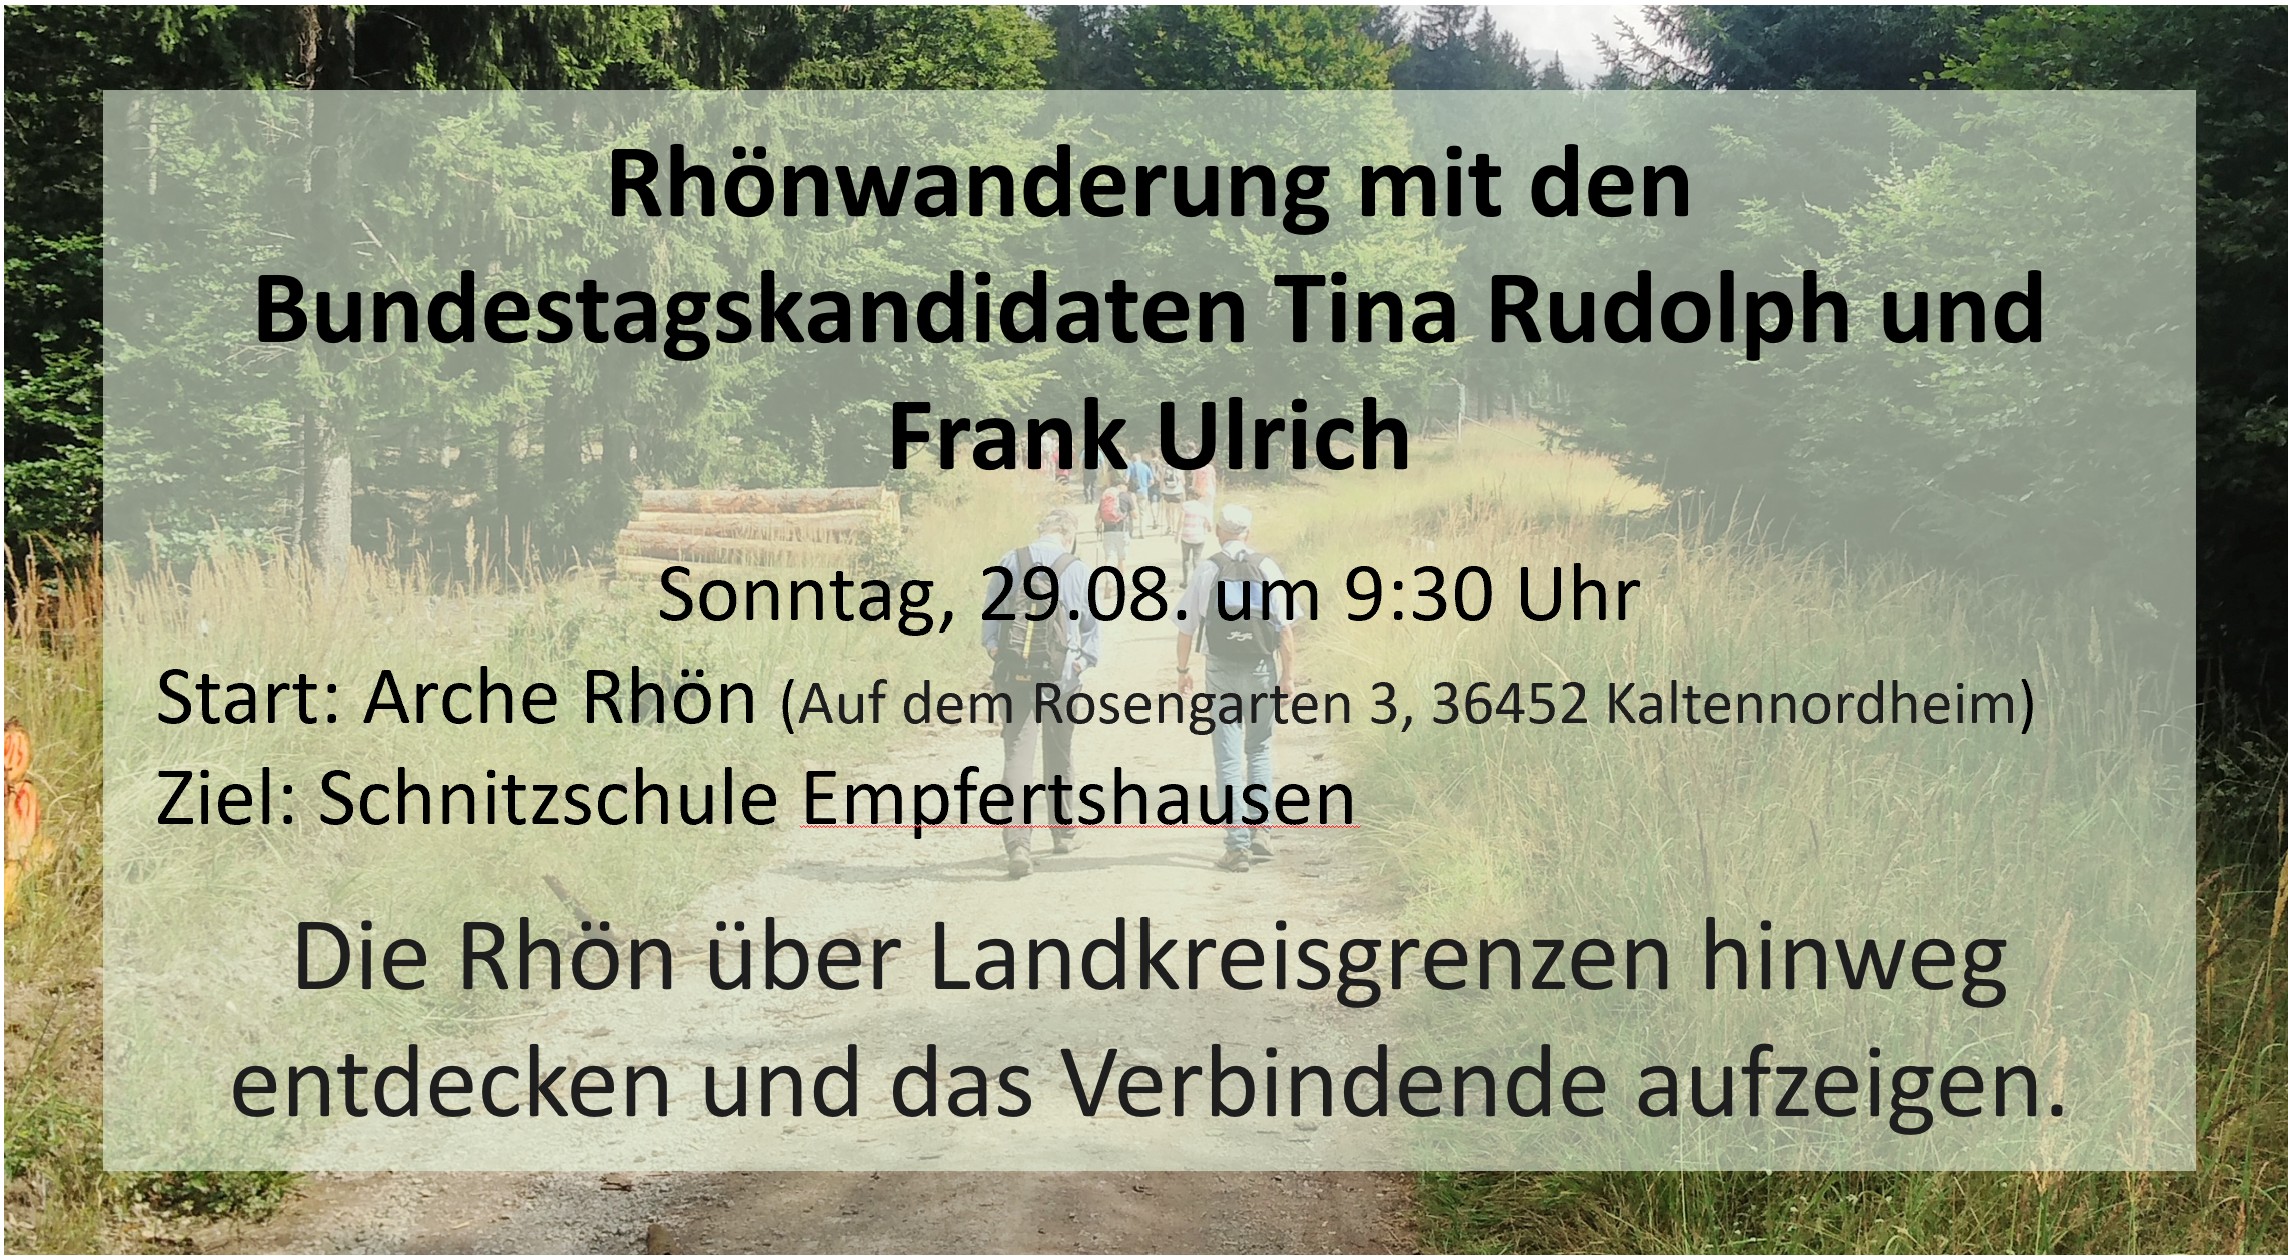 Rhönwanderung mit den Bundestagskandidaten Tina Rudolph und Frank Ulrich